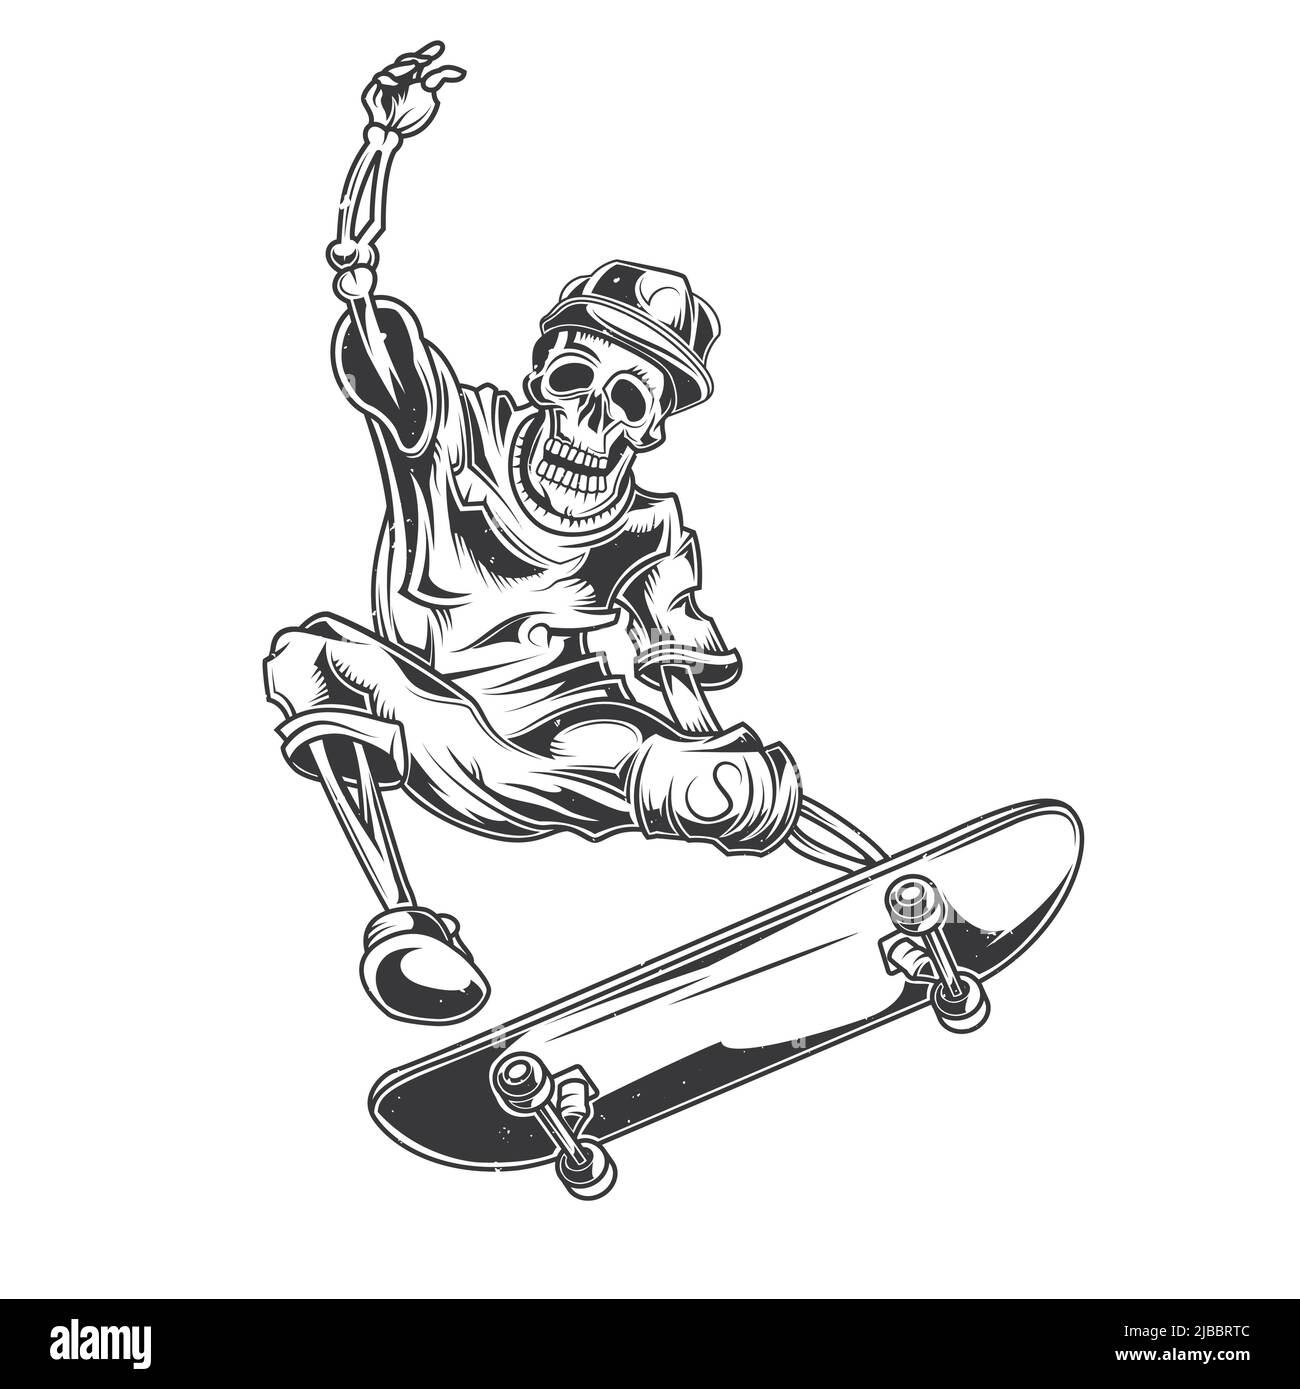 Illustration du squelette sur le skate board Image Vectorielle Stock - Alamy